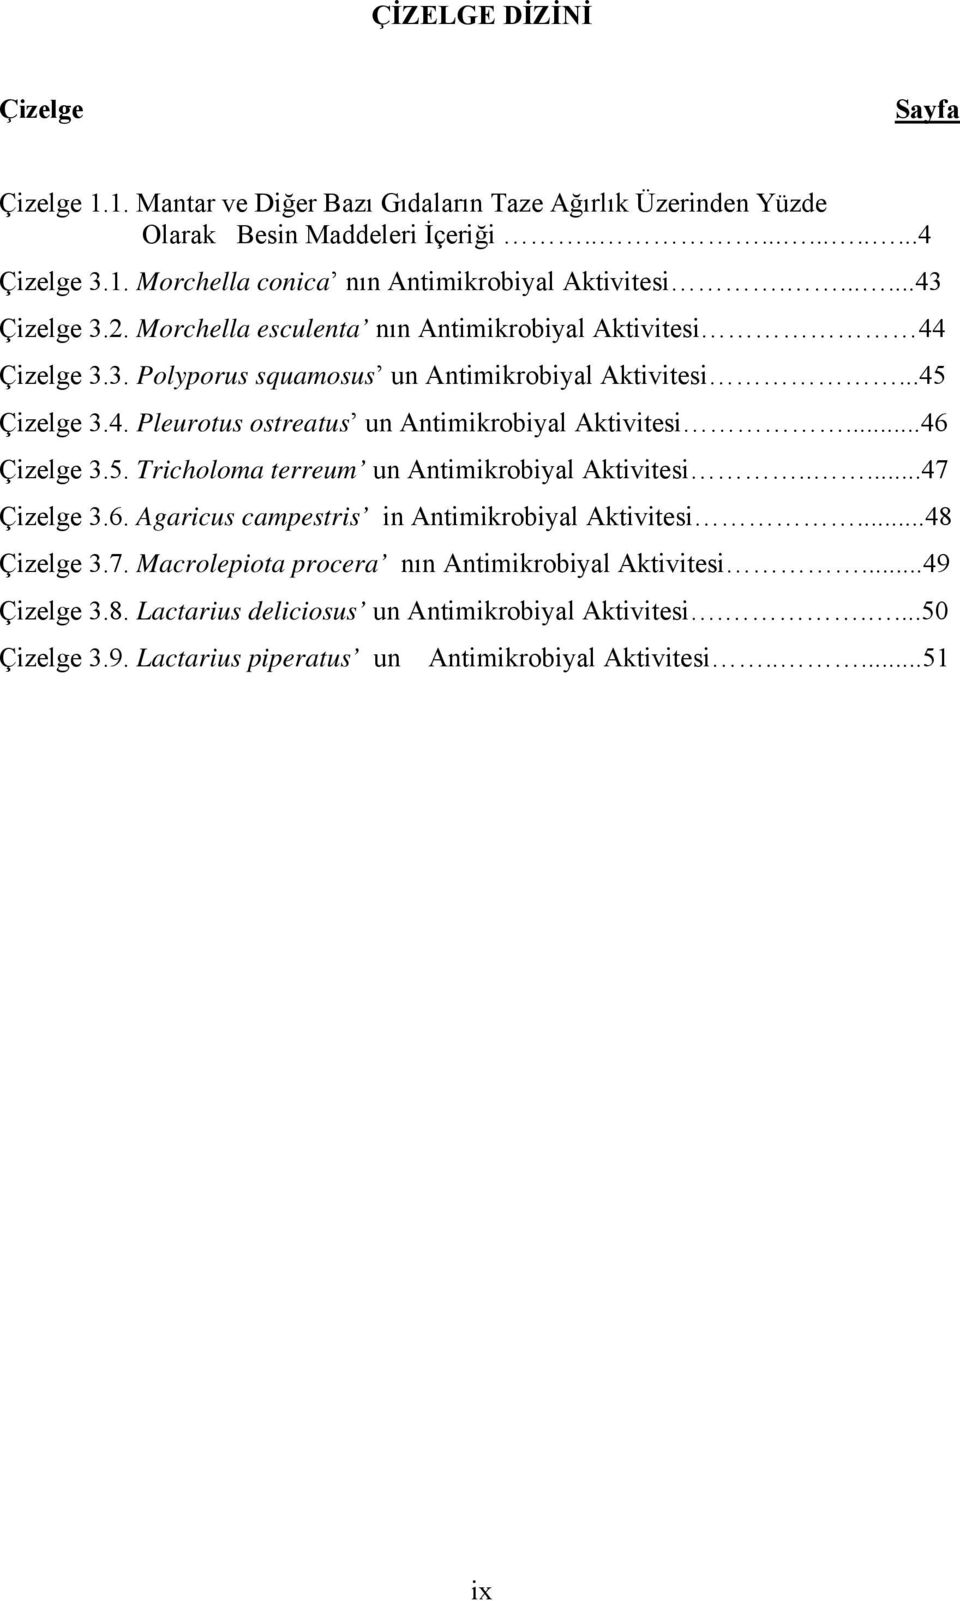 ..46 Çizelge 3.5. Tricholoma terreum un Antimikrobiyal Aktivitesi.....47 Çizelge 3.6. Agaricus campestris in Antimikrobiyal Aktivitesi...48 Çizelge 3.7. Macrolepiota procera nın Antimikrobiyal Aktivitesi.